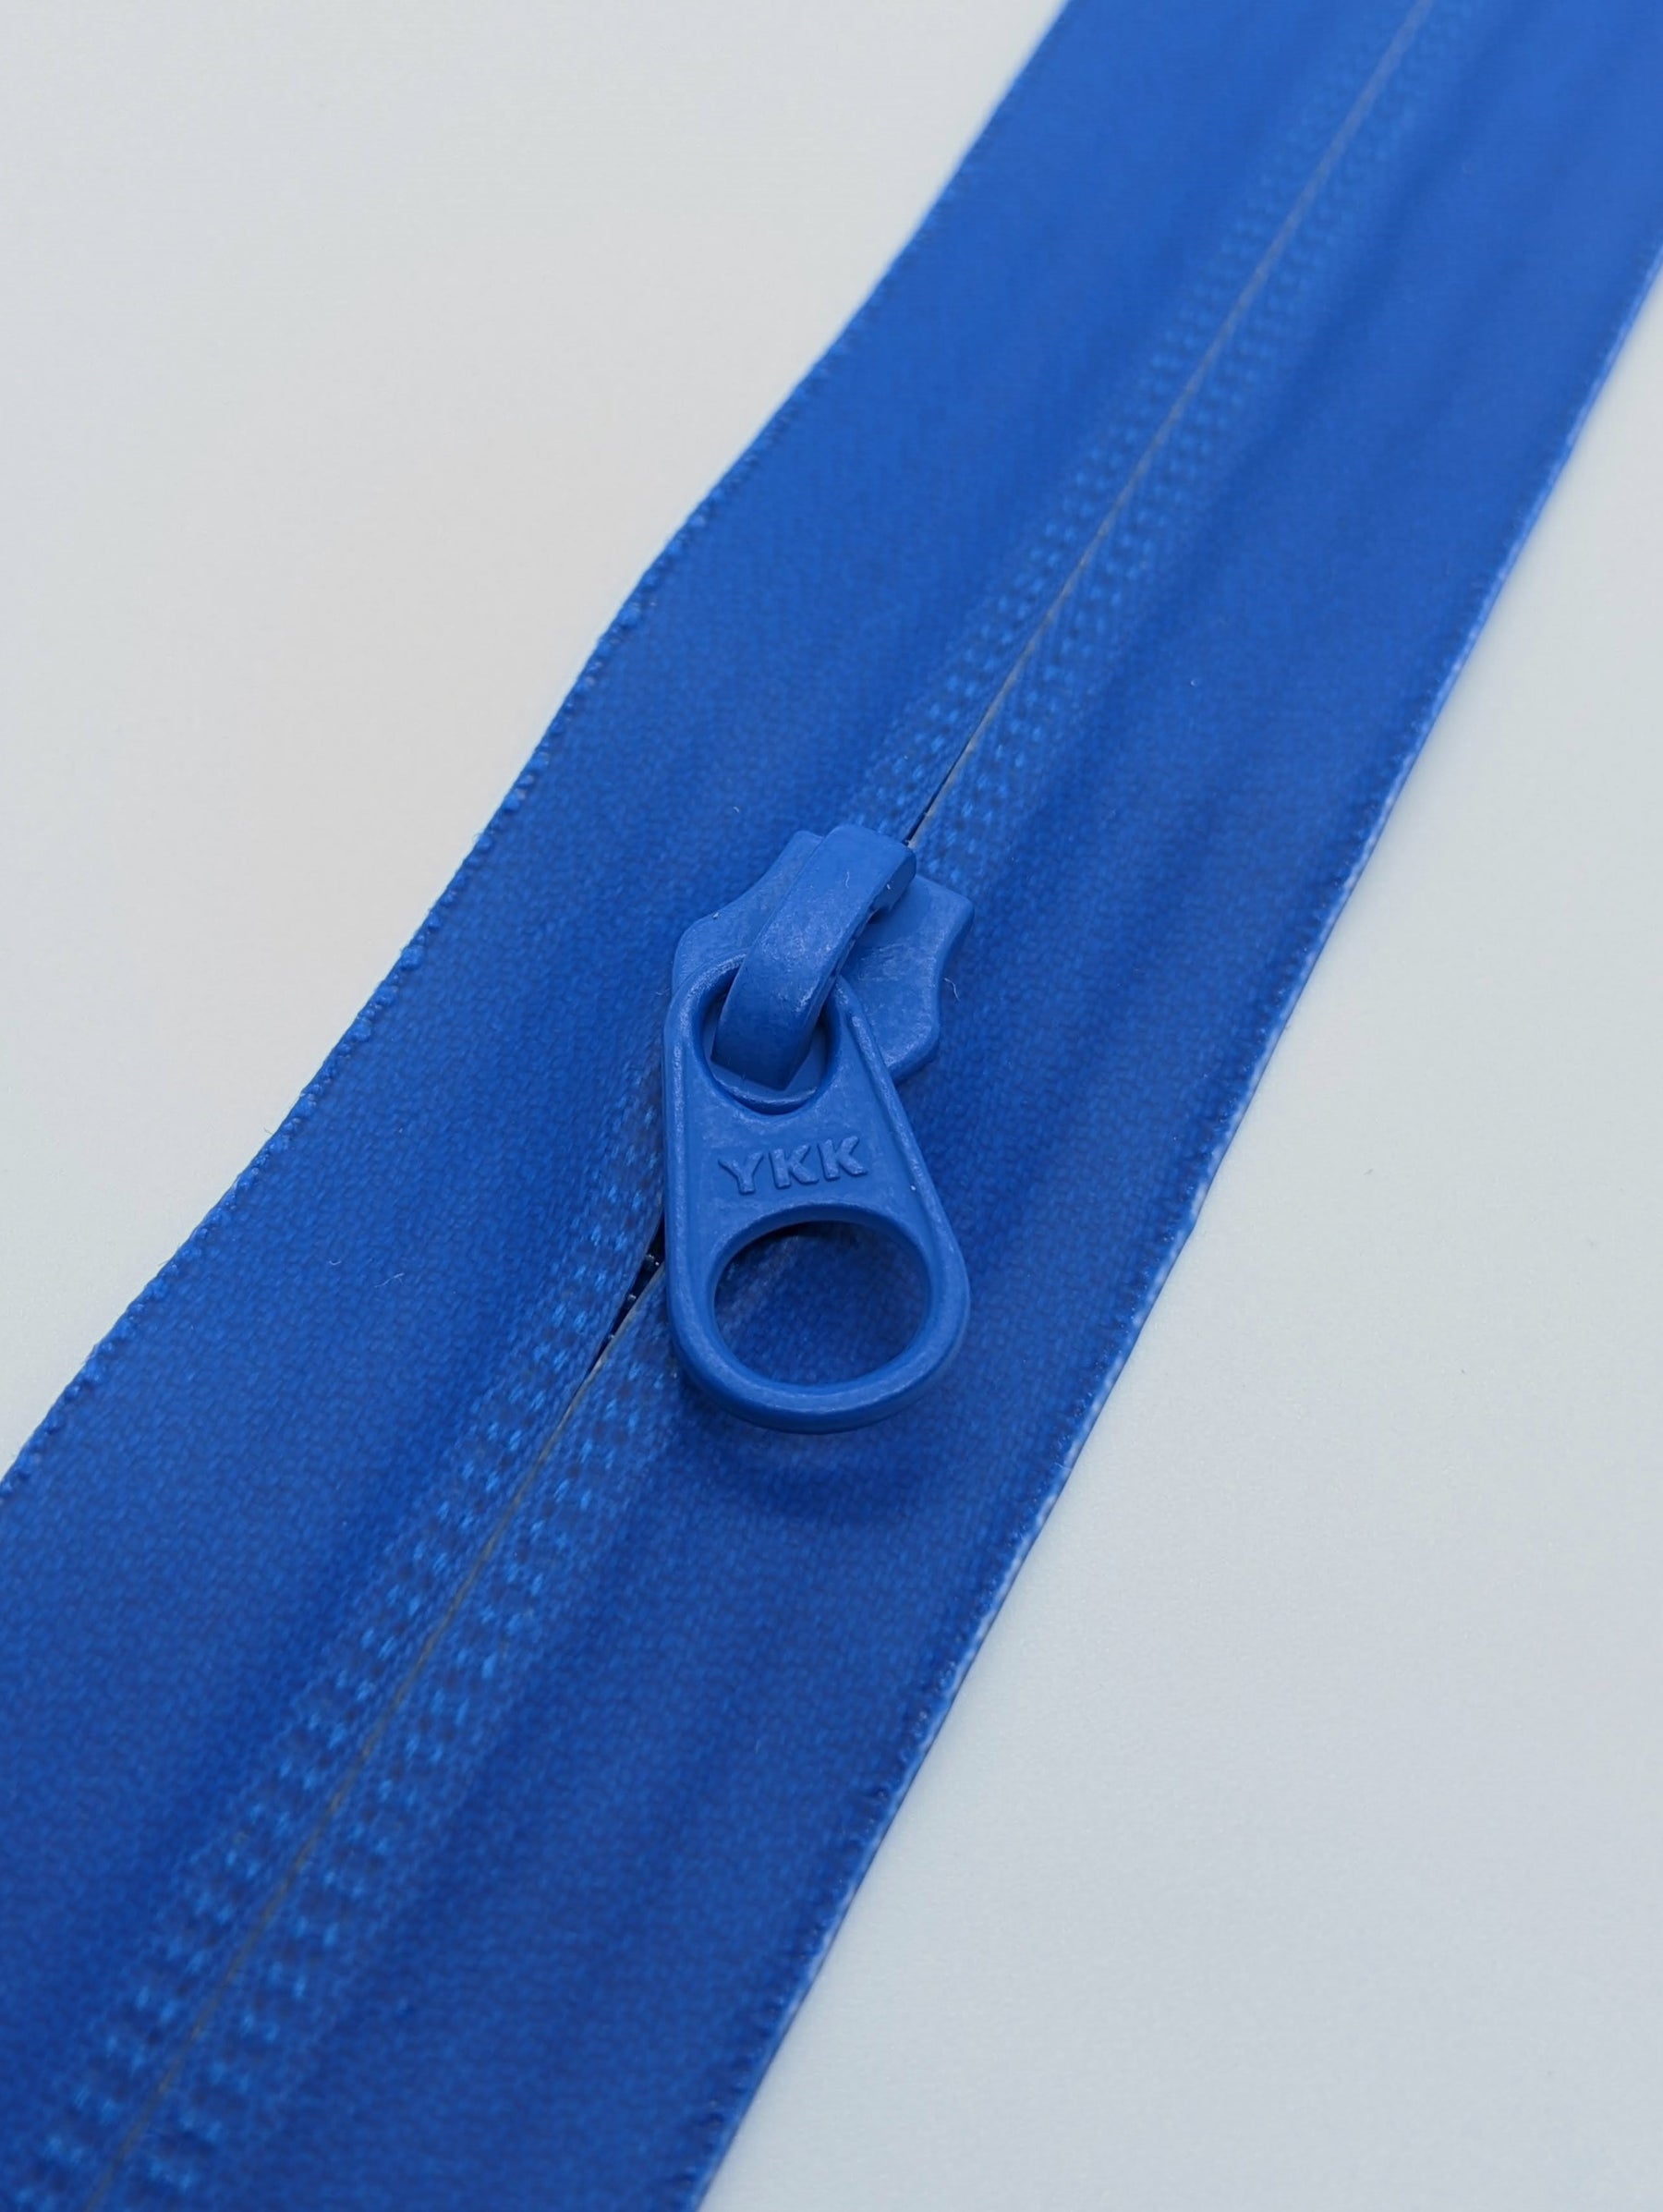 YKK #5 CN Zipper Slider. These Sliders are Made for YKK CN Coil